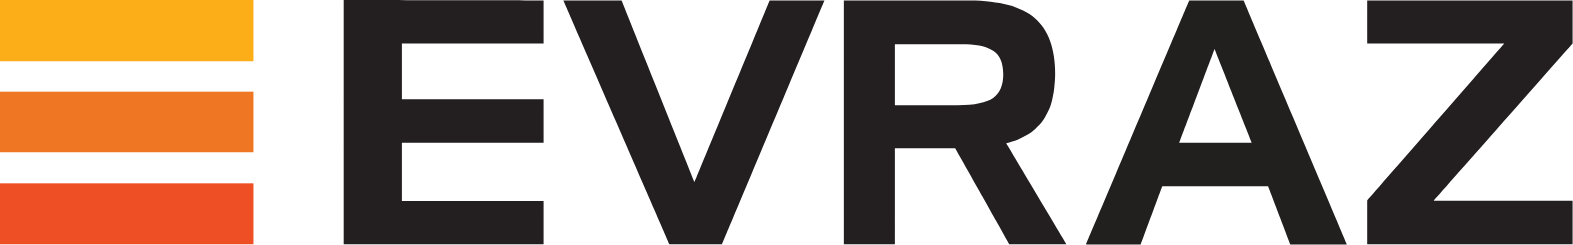 Evraz logo large (transparent PNG)